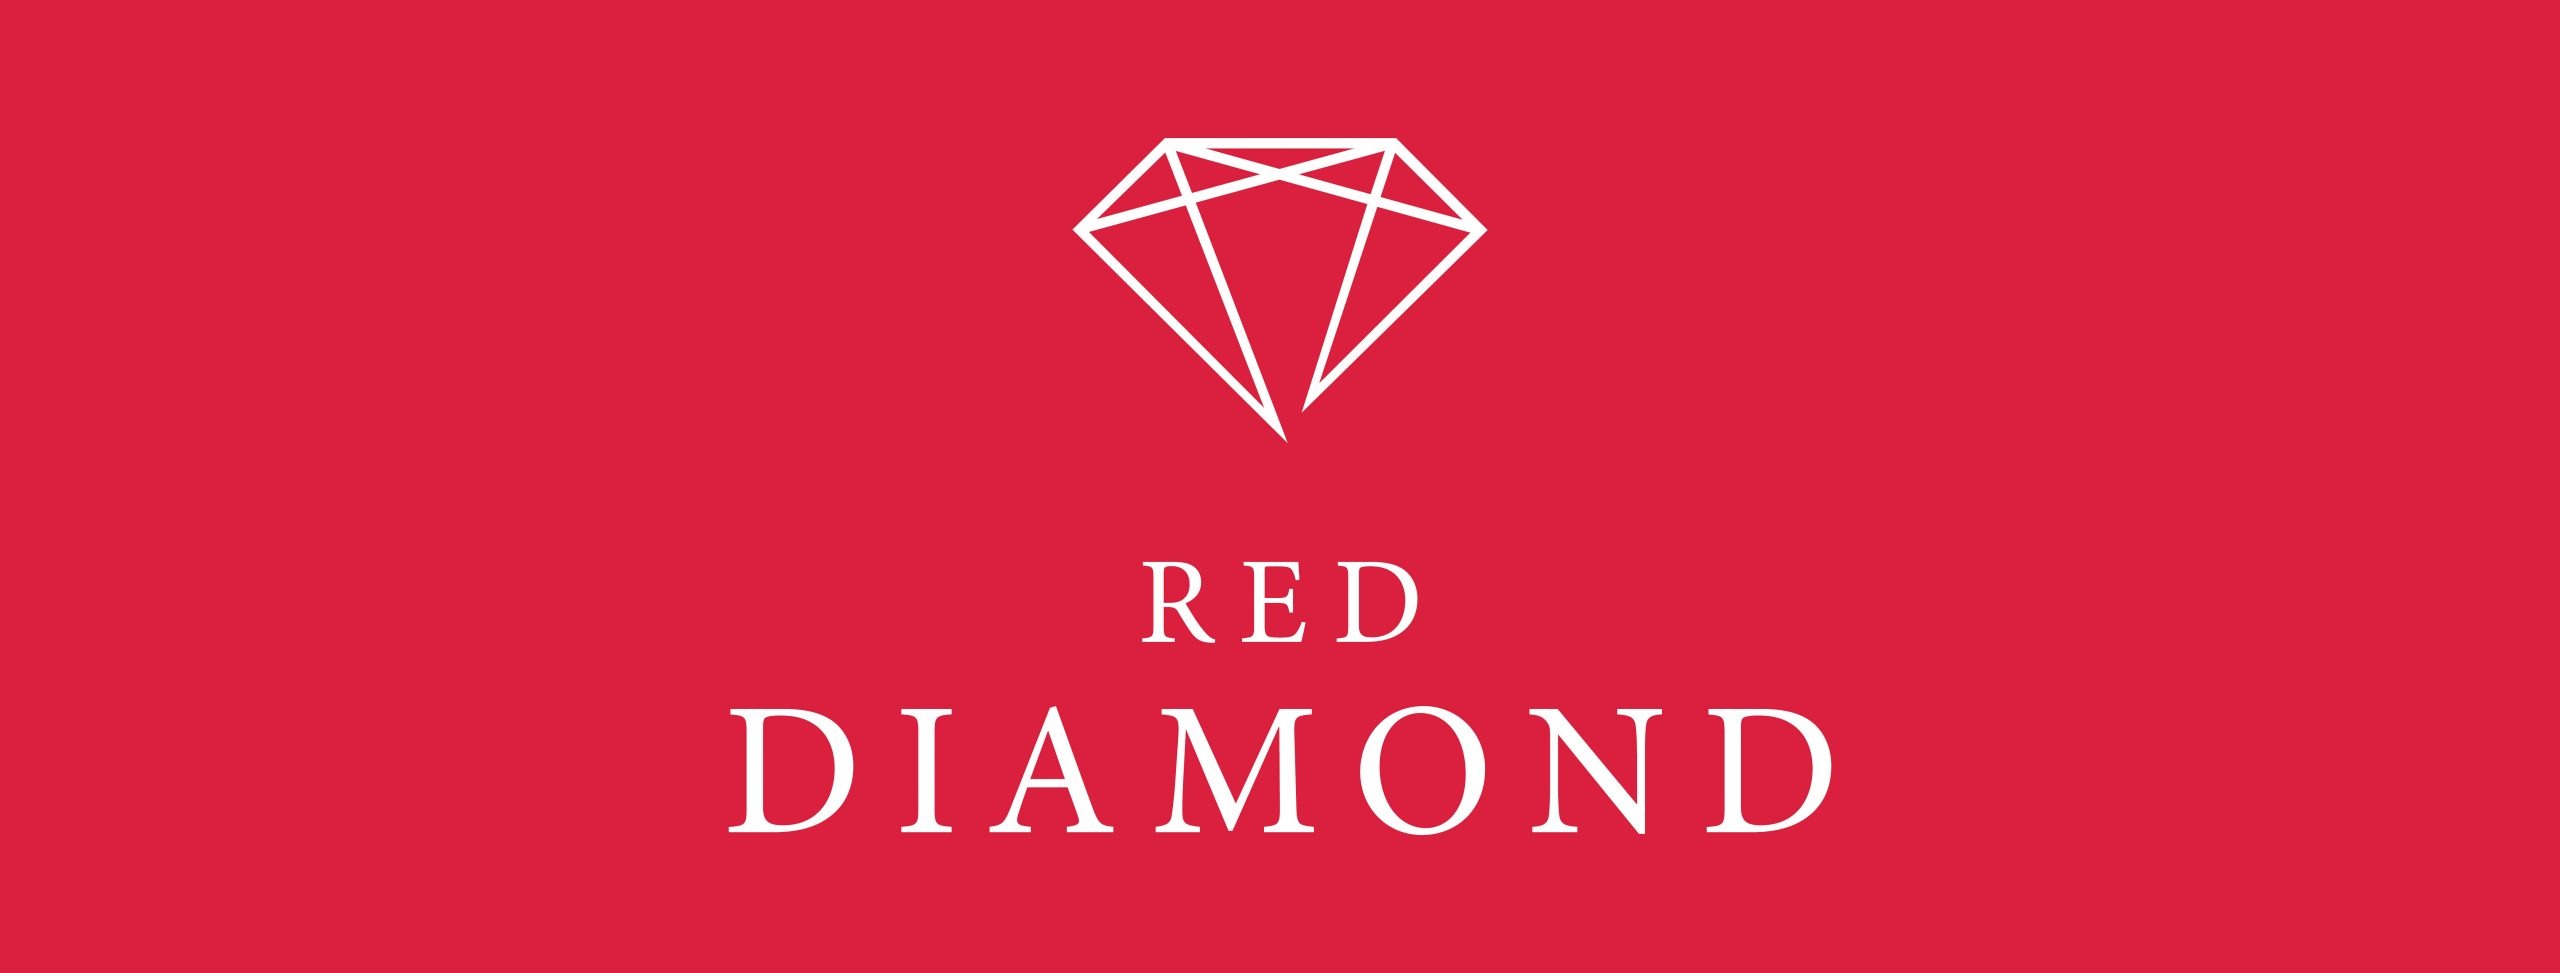 20200611_RED DIAMOND LOGO